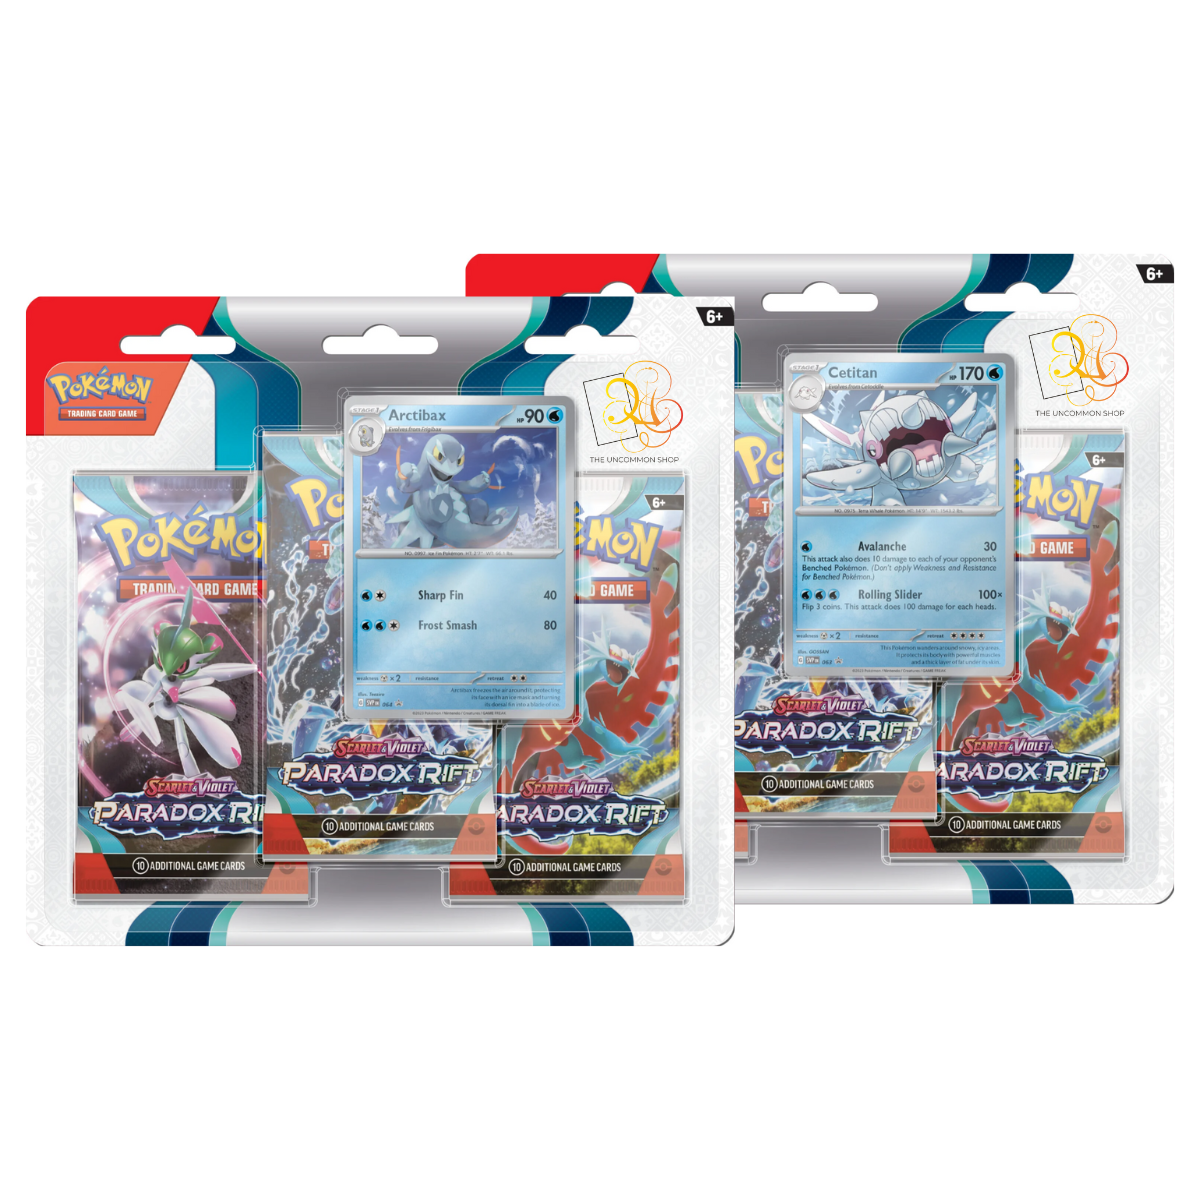 Pokémon - Karmesin & Purpur: Paradoxrift - 3-Pack Blister Booster - EN